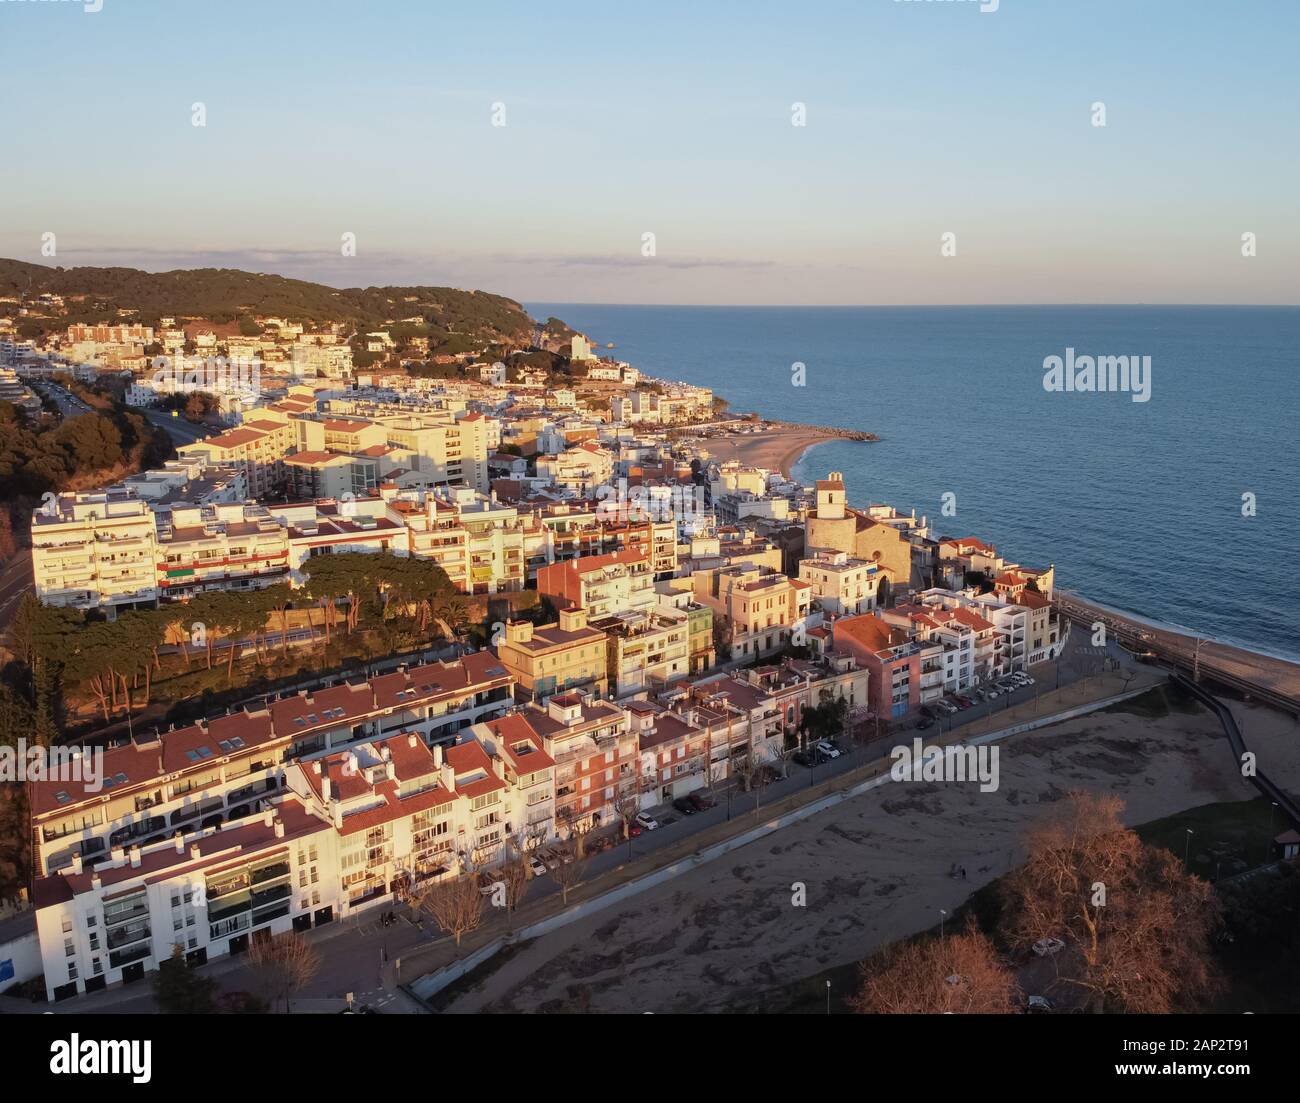 Aerial view of Sant Pol de Mar village in el Maresme coast, Catalonia Stock Photo